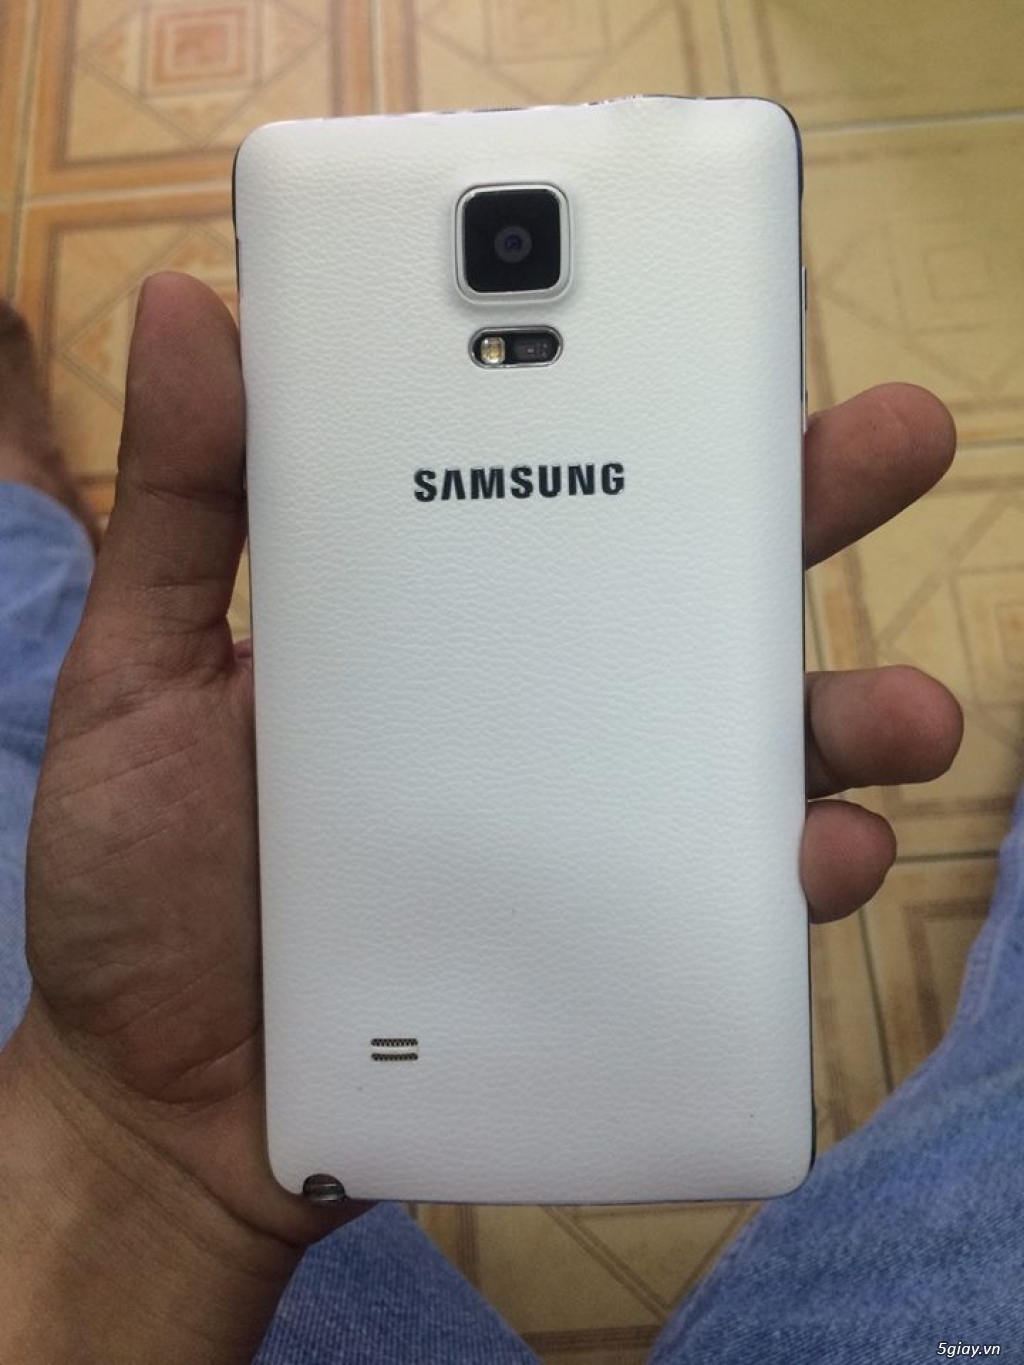 Samsung Galaxy Note 4 32gb màu trắng dư dùng cần bán - 1